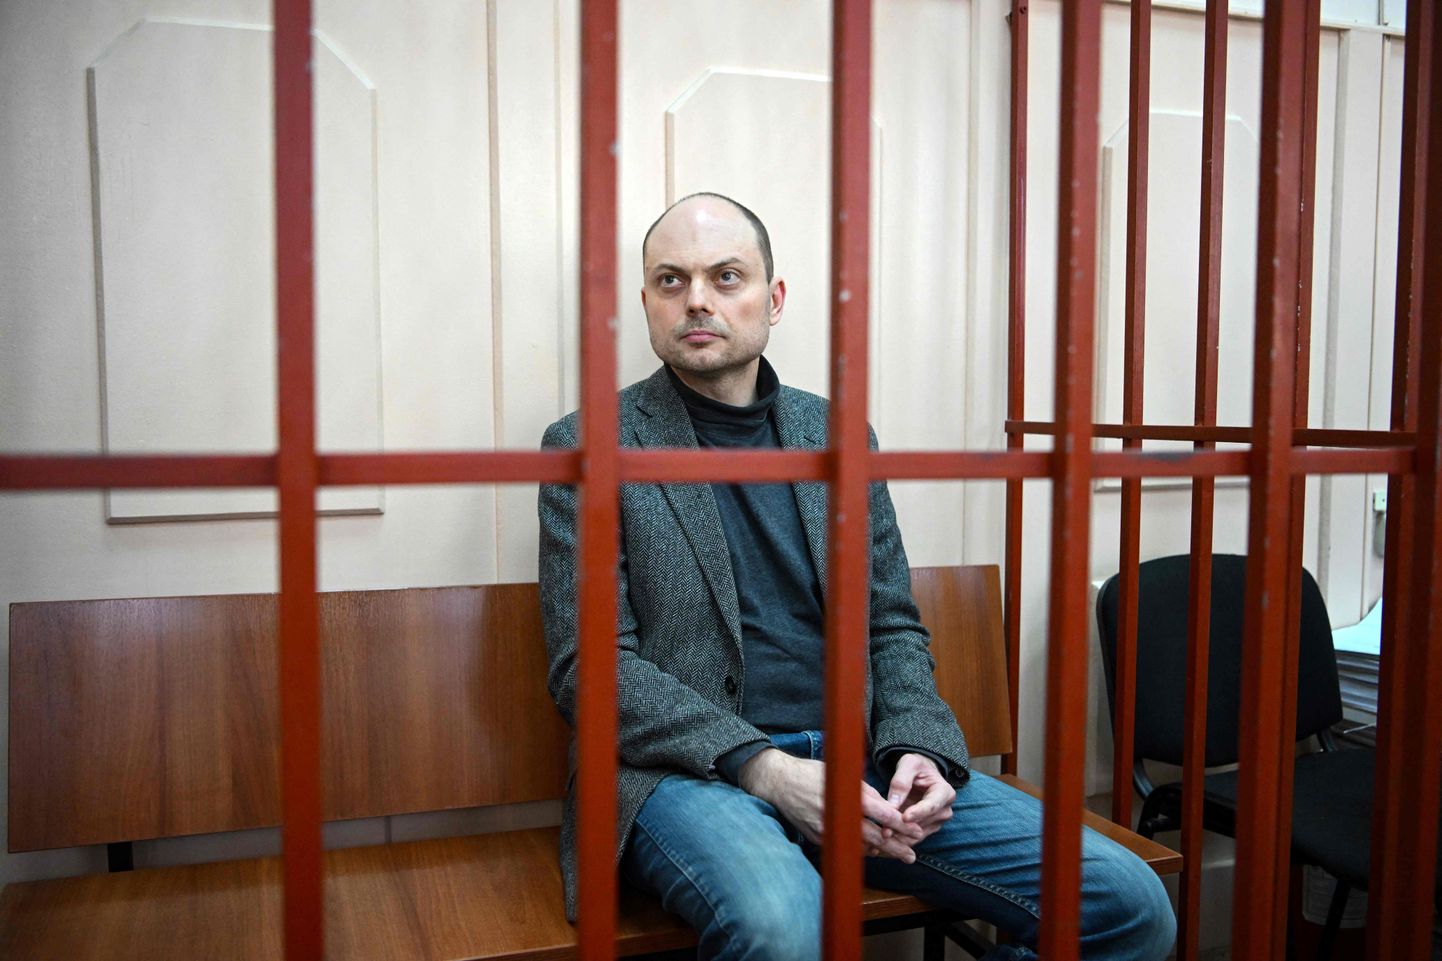 Venemaa opositsiooniaktivist Vladimir Kara-Murza oktoobris 2022 istumas Moskvas Basmannõi kohtus toimunud istungil süüdistatavate puuris pingil.